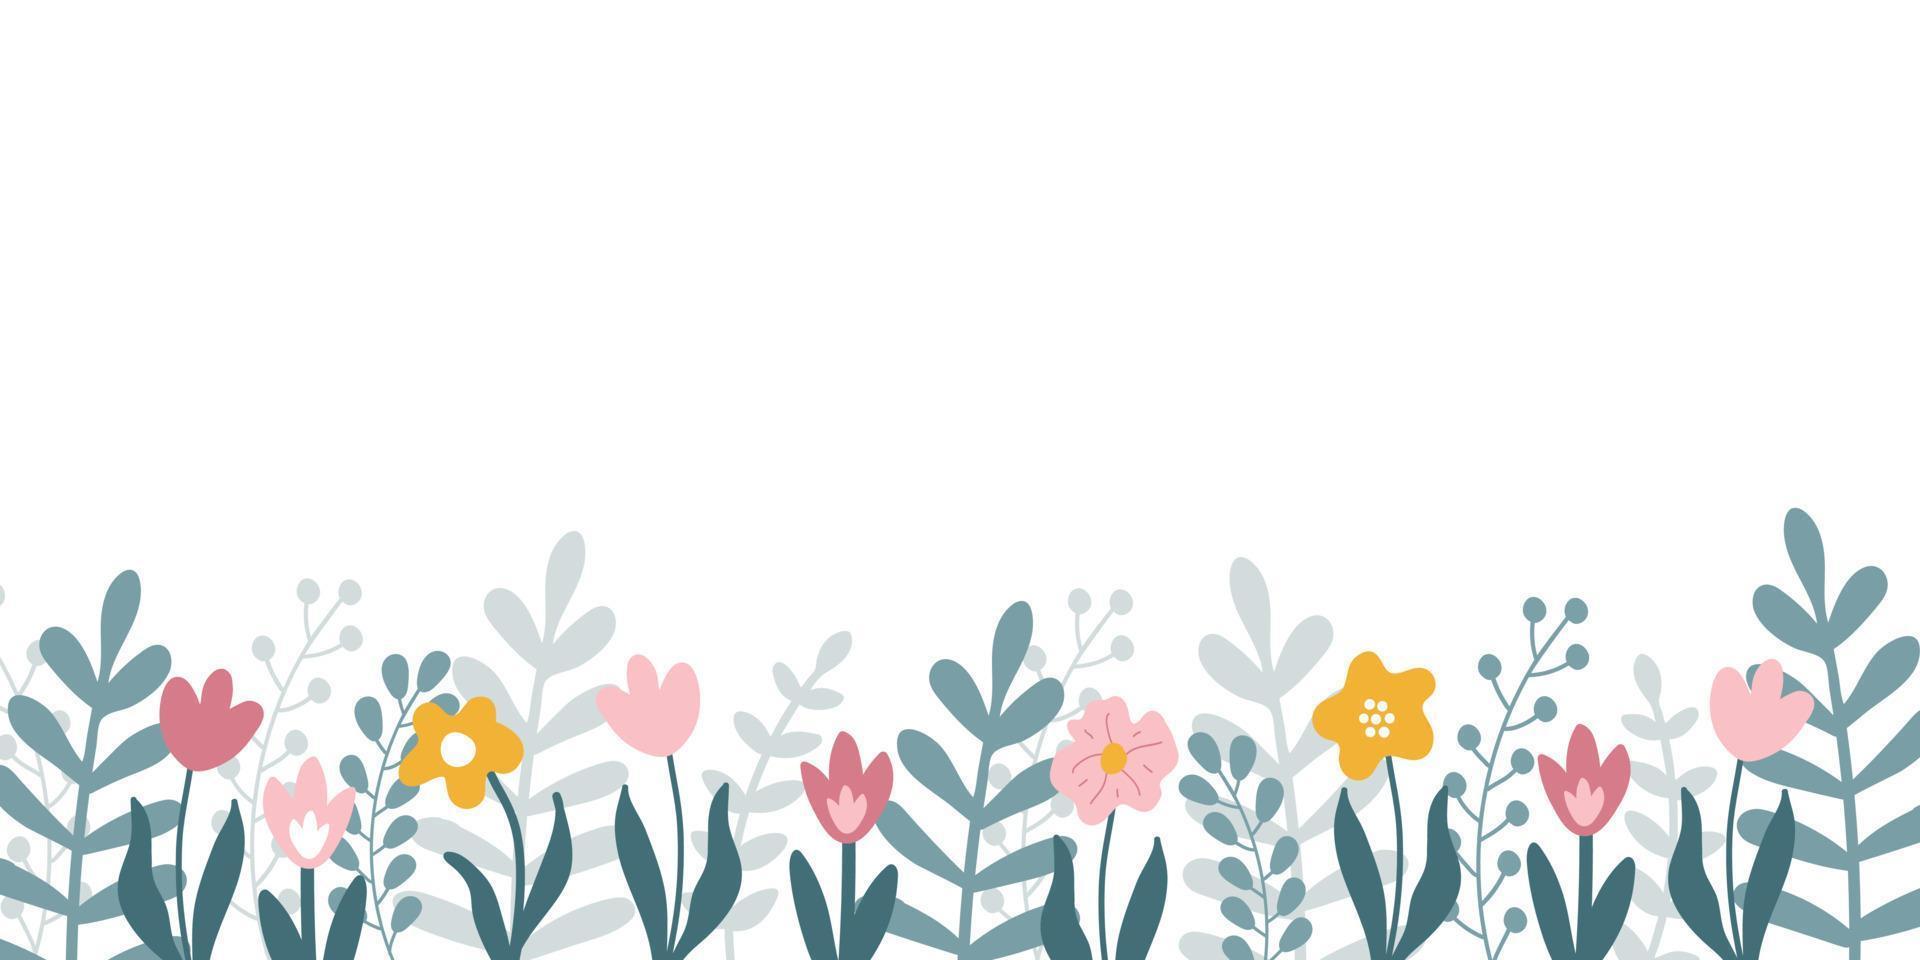 vetor banner horizontal floral com flores e folhas desenhadas à mão e copie o espaço para texto em fundo branco.